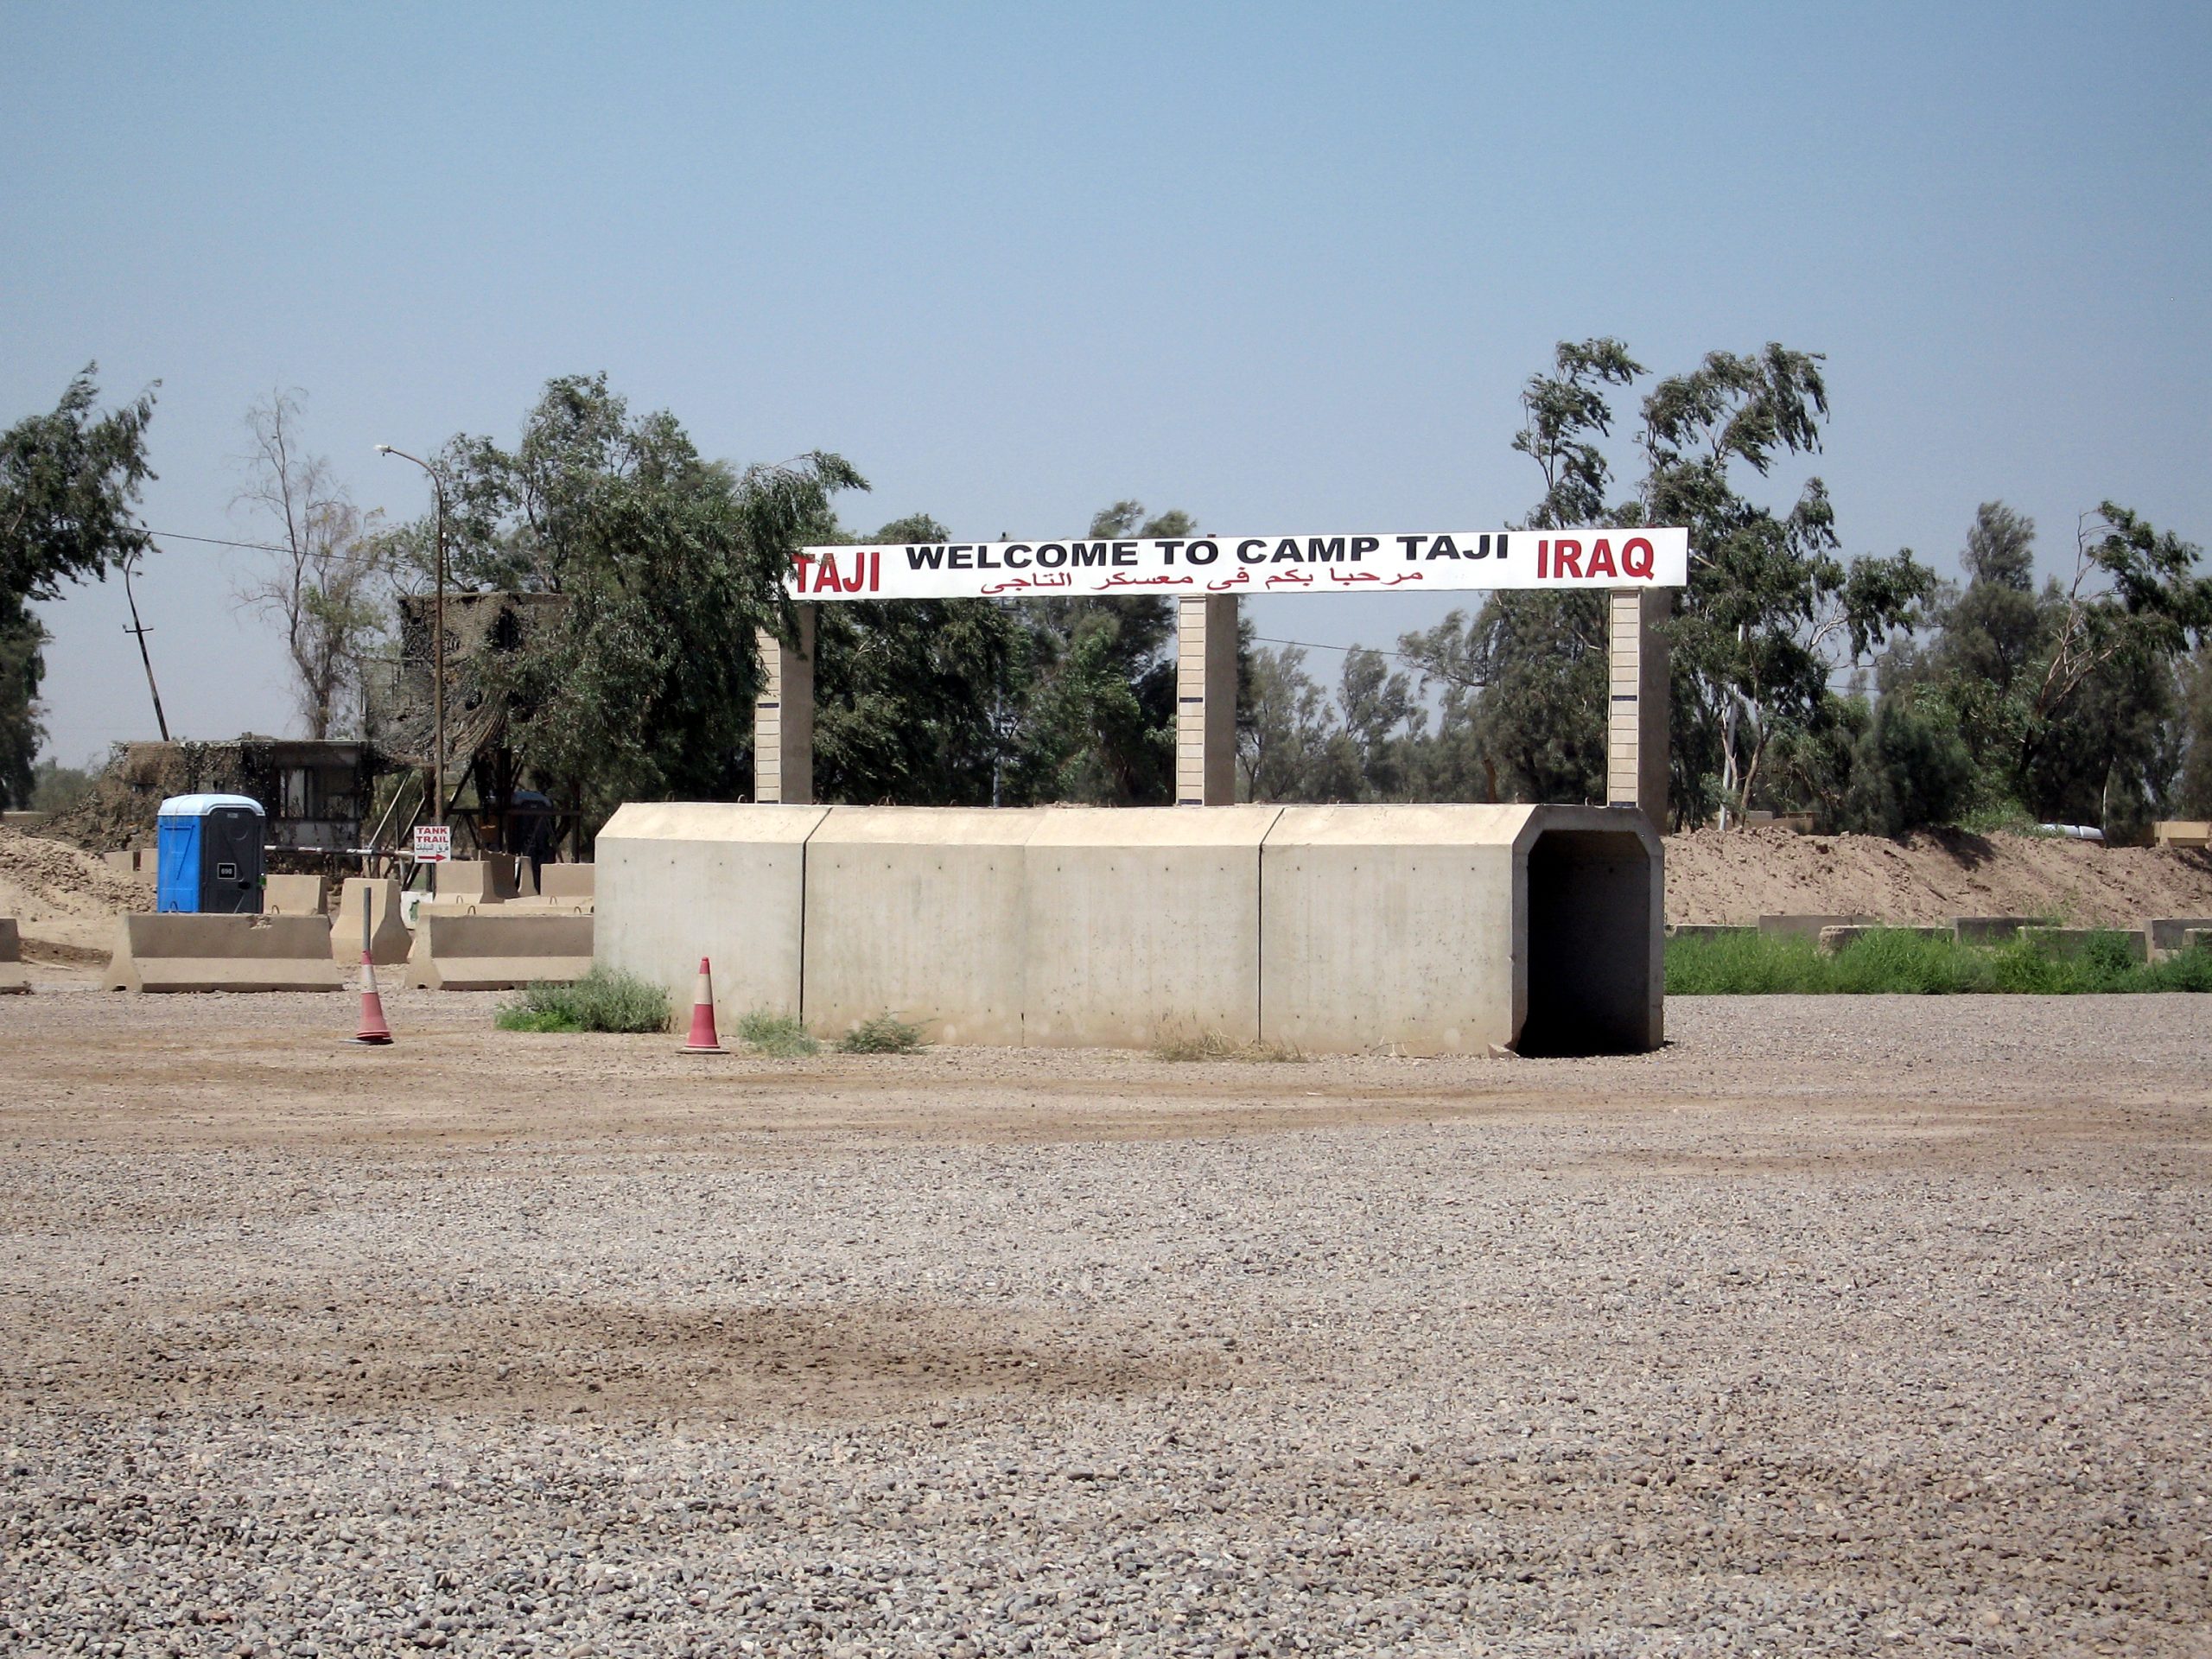 ΕΚΤΑΚΤΟ: Ρουκέτες κατά στρατιωτικής βάσης των ΗΠΑ  στο Ιράκ – Εκκενώθηκε η αμερικανική πρεσβεία στη Βαγδάτη